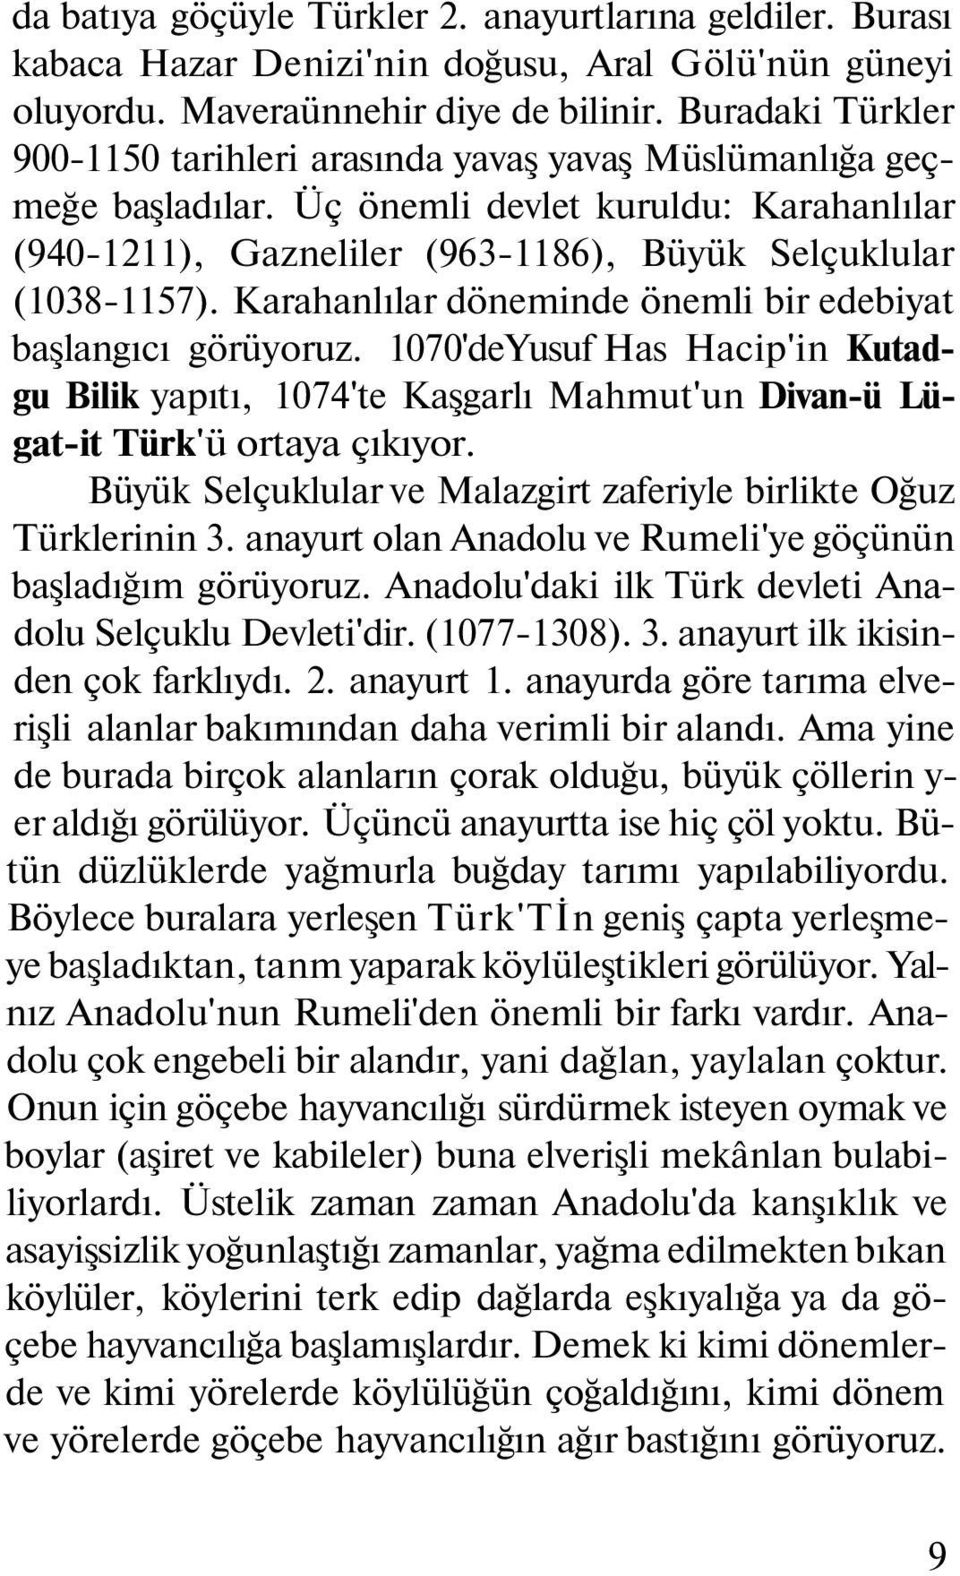 Karahanlılar döneminde önemli bir edebiyat başlangıcı görüyoruz. 1070'deYusuf Has Hacip'in Kutadgu Bilik yapıtı, 1074'te Kaşgarlı Mahmut'un Divan-ü Lügat-it Türk'ü ortaya çıkıyor.